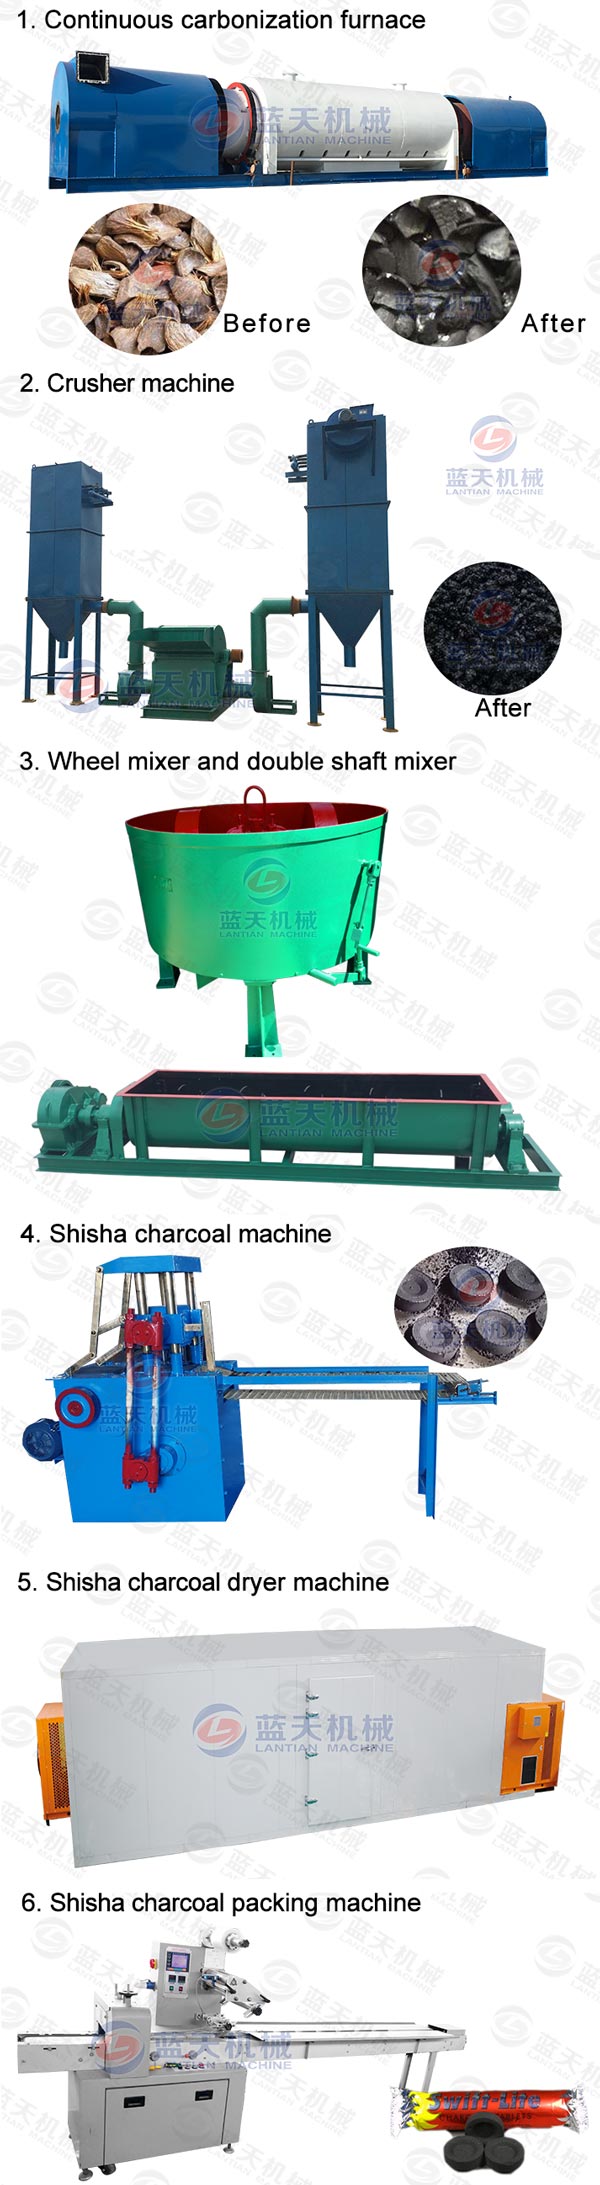 shisha charcoal briquetting machine